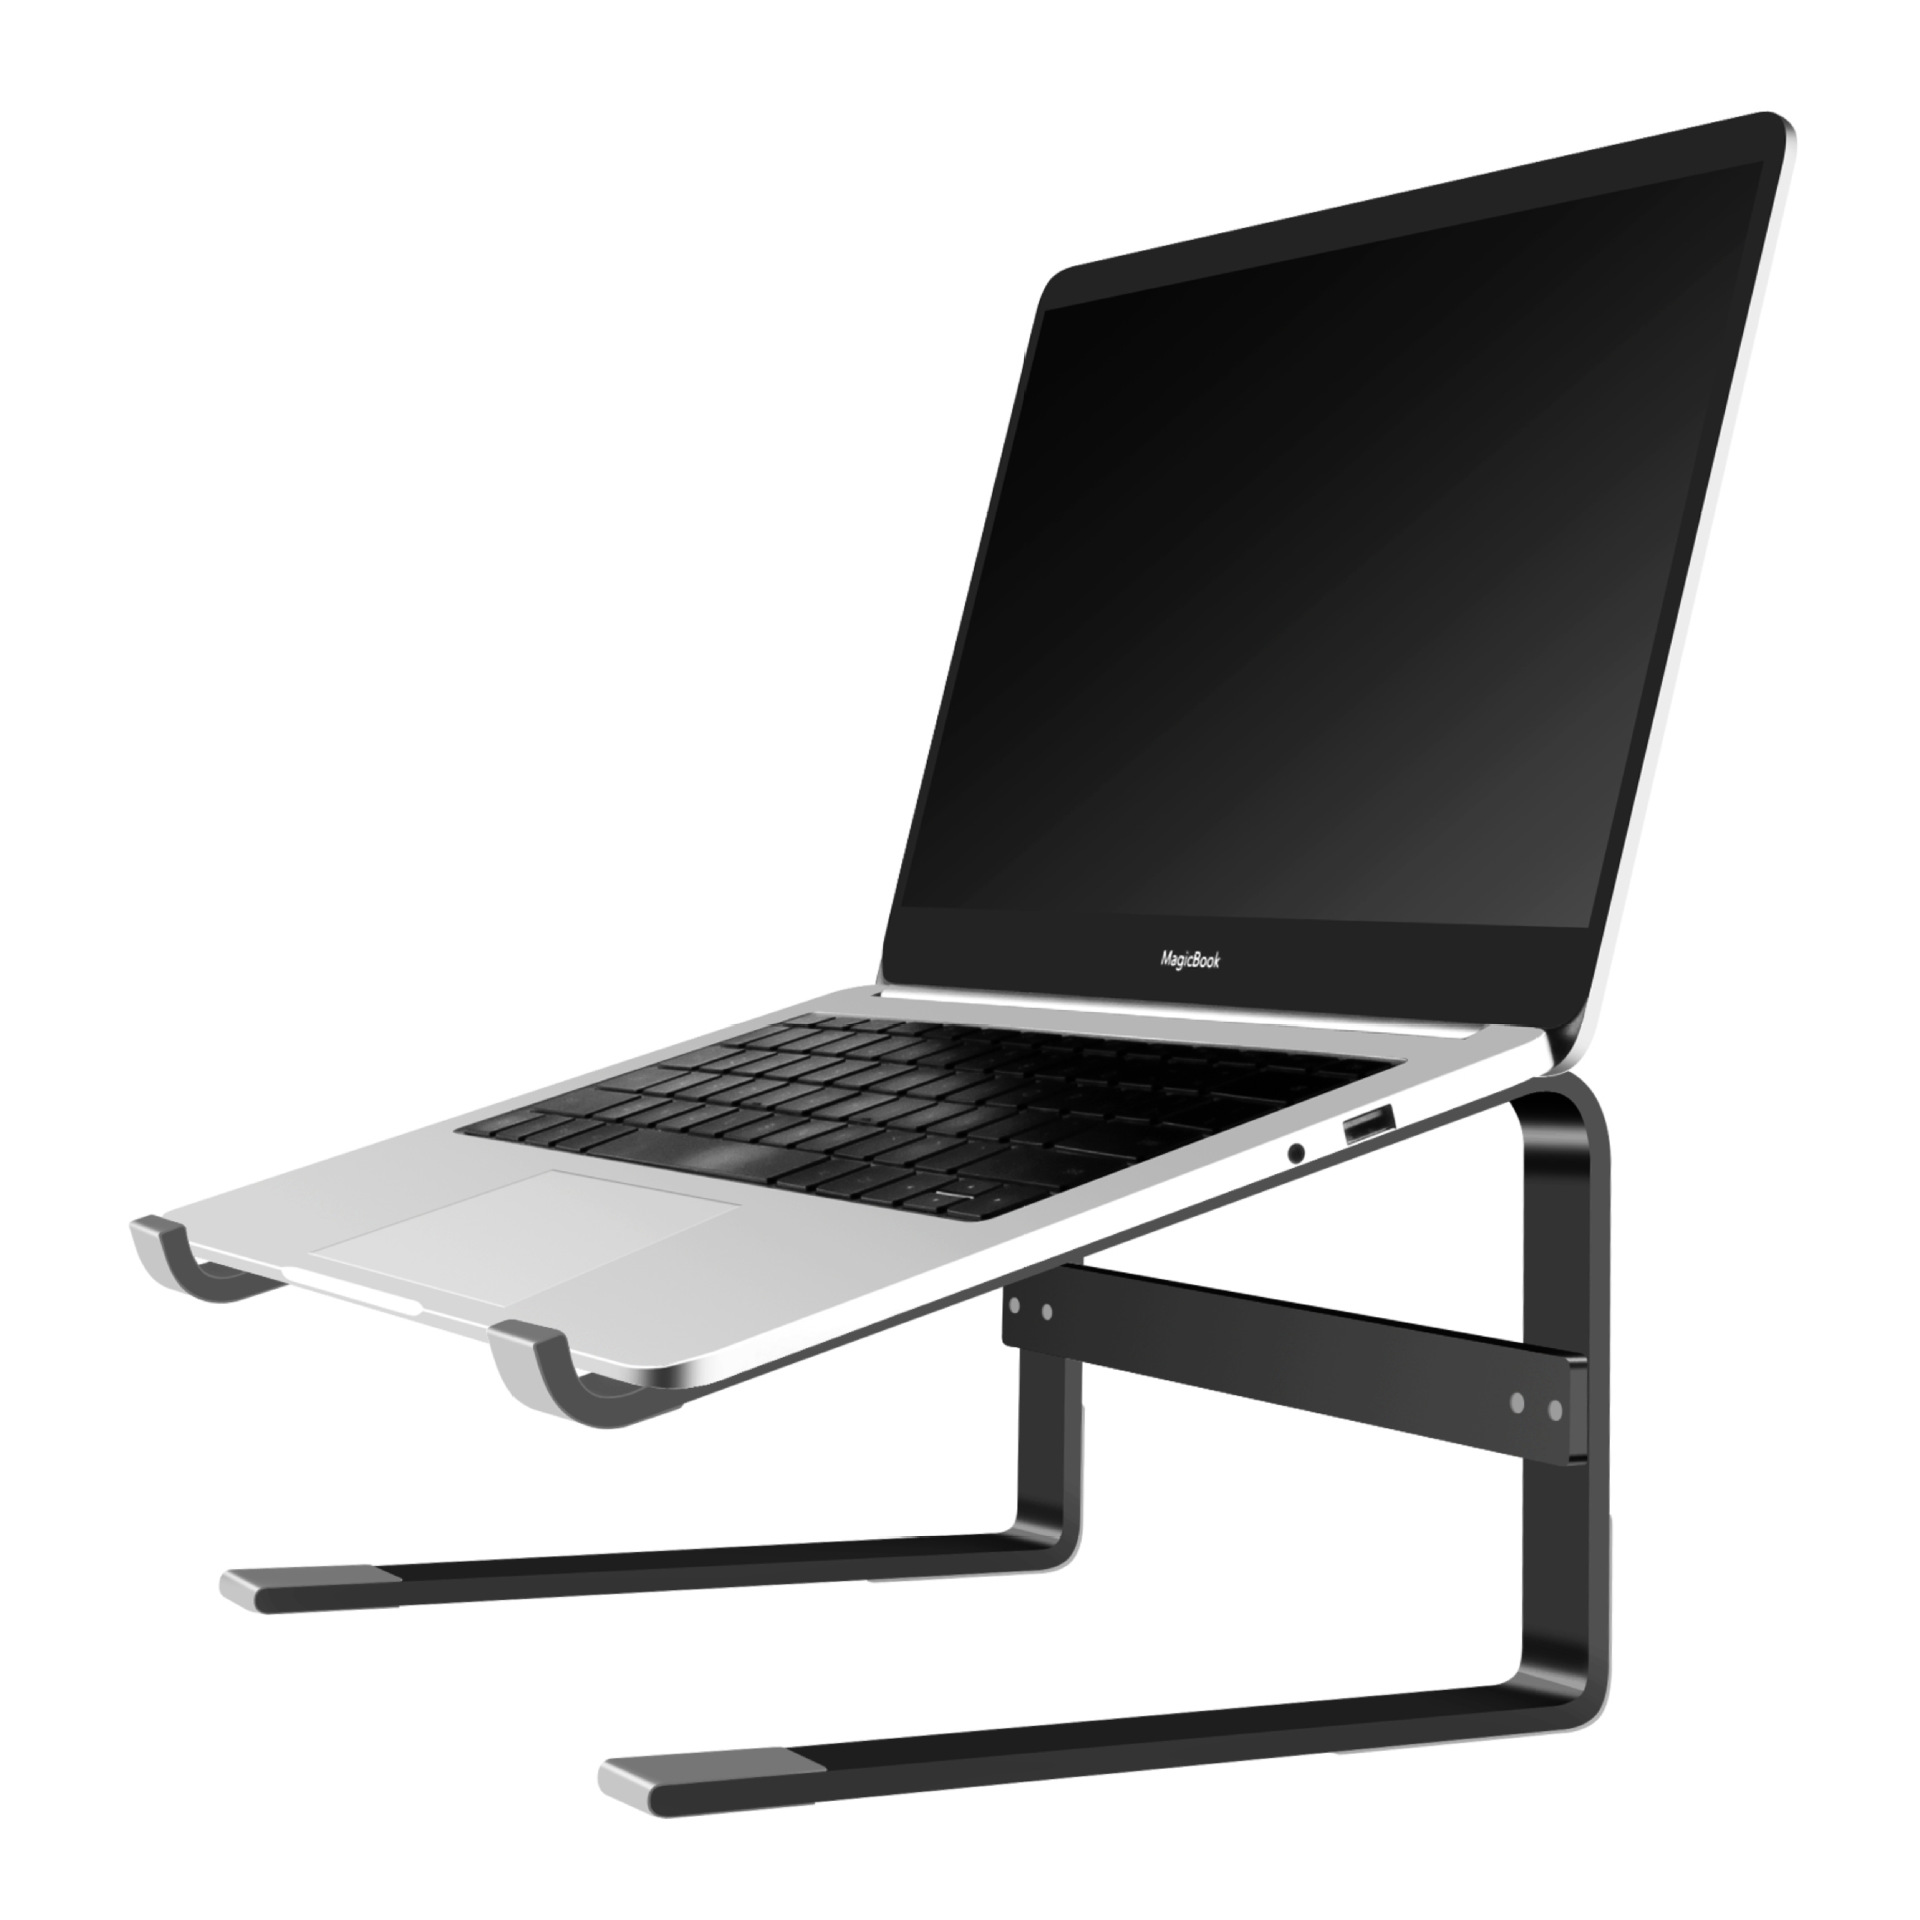 笔记本电脑支架 金属铝合金桌面增高架 适用于华为苹果Macbook